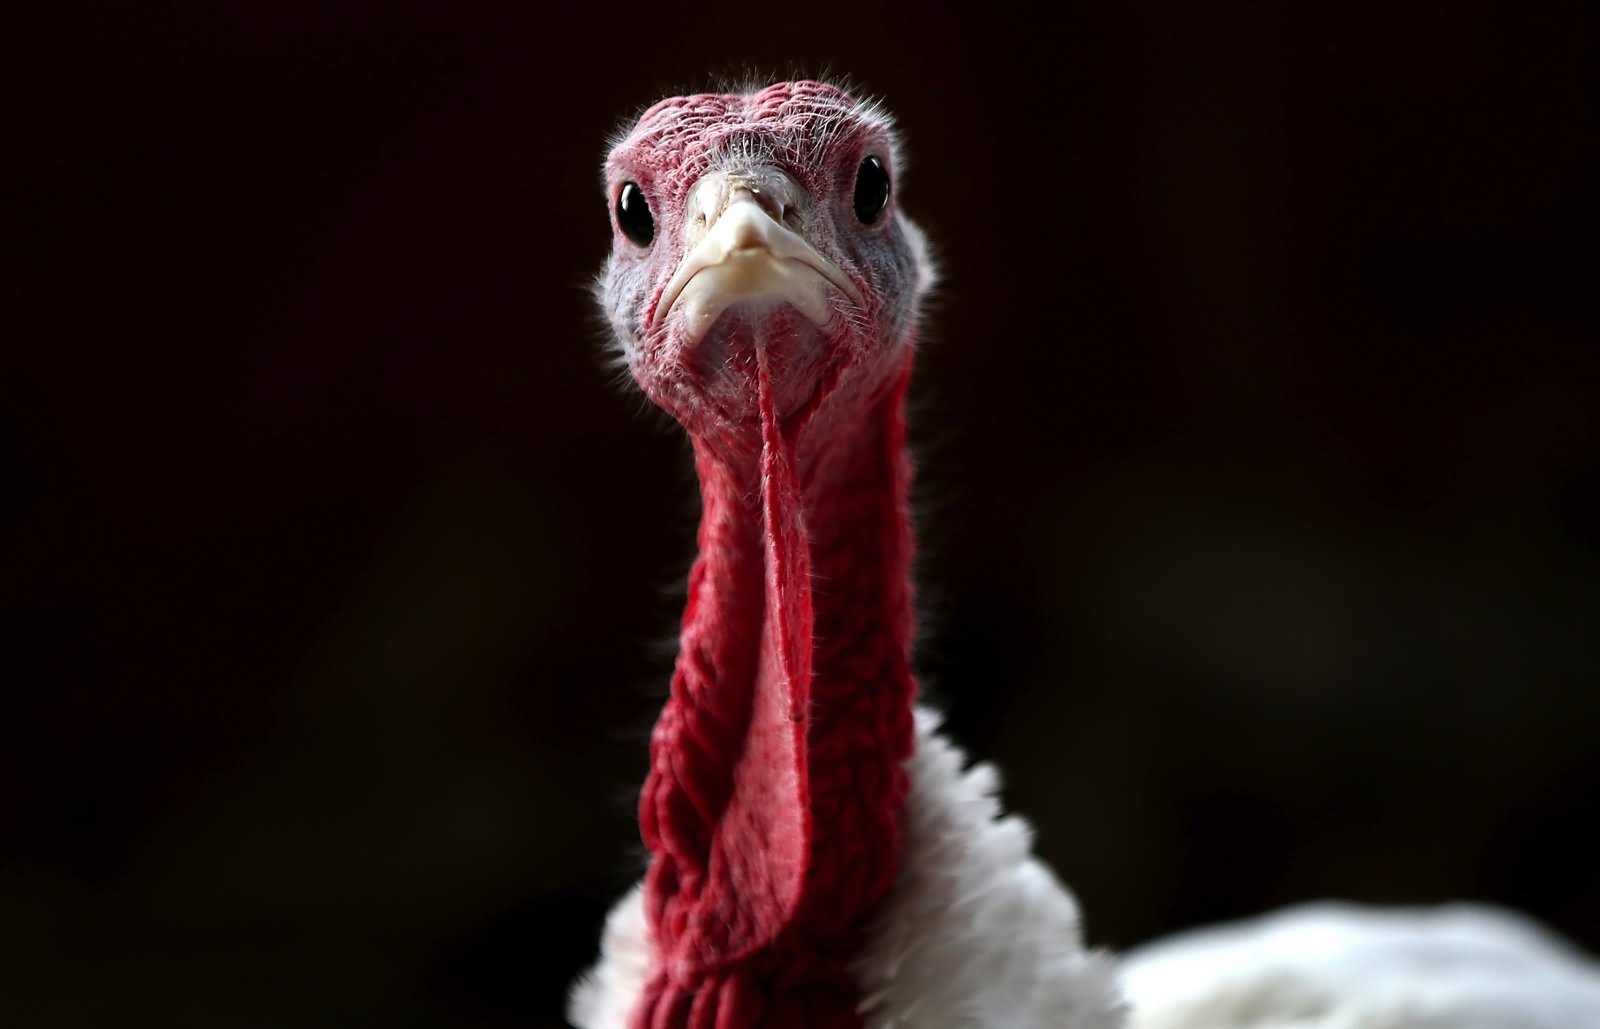 Turkey Bird Funny Face Photo